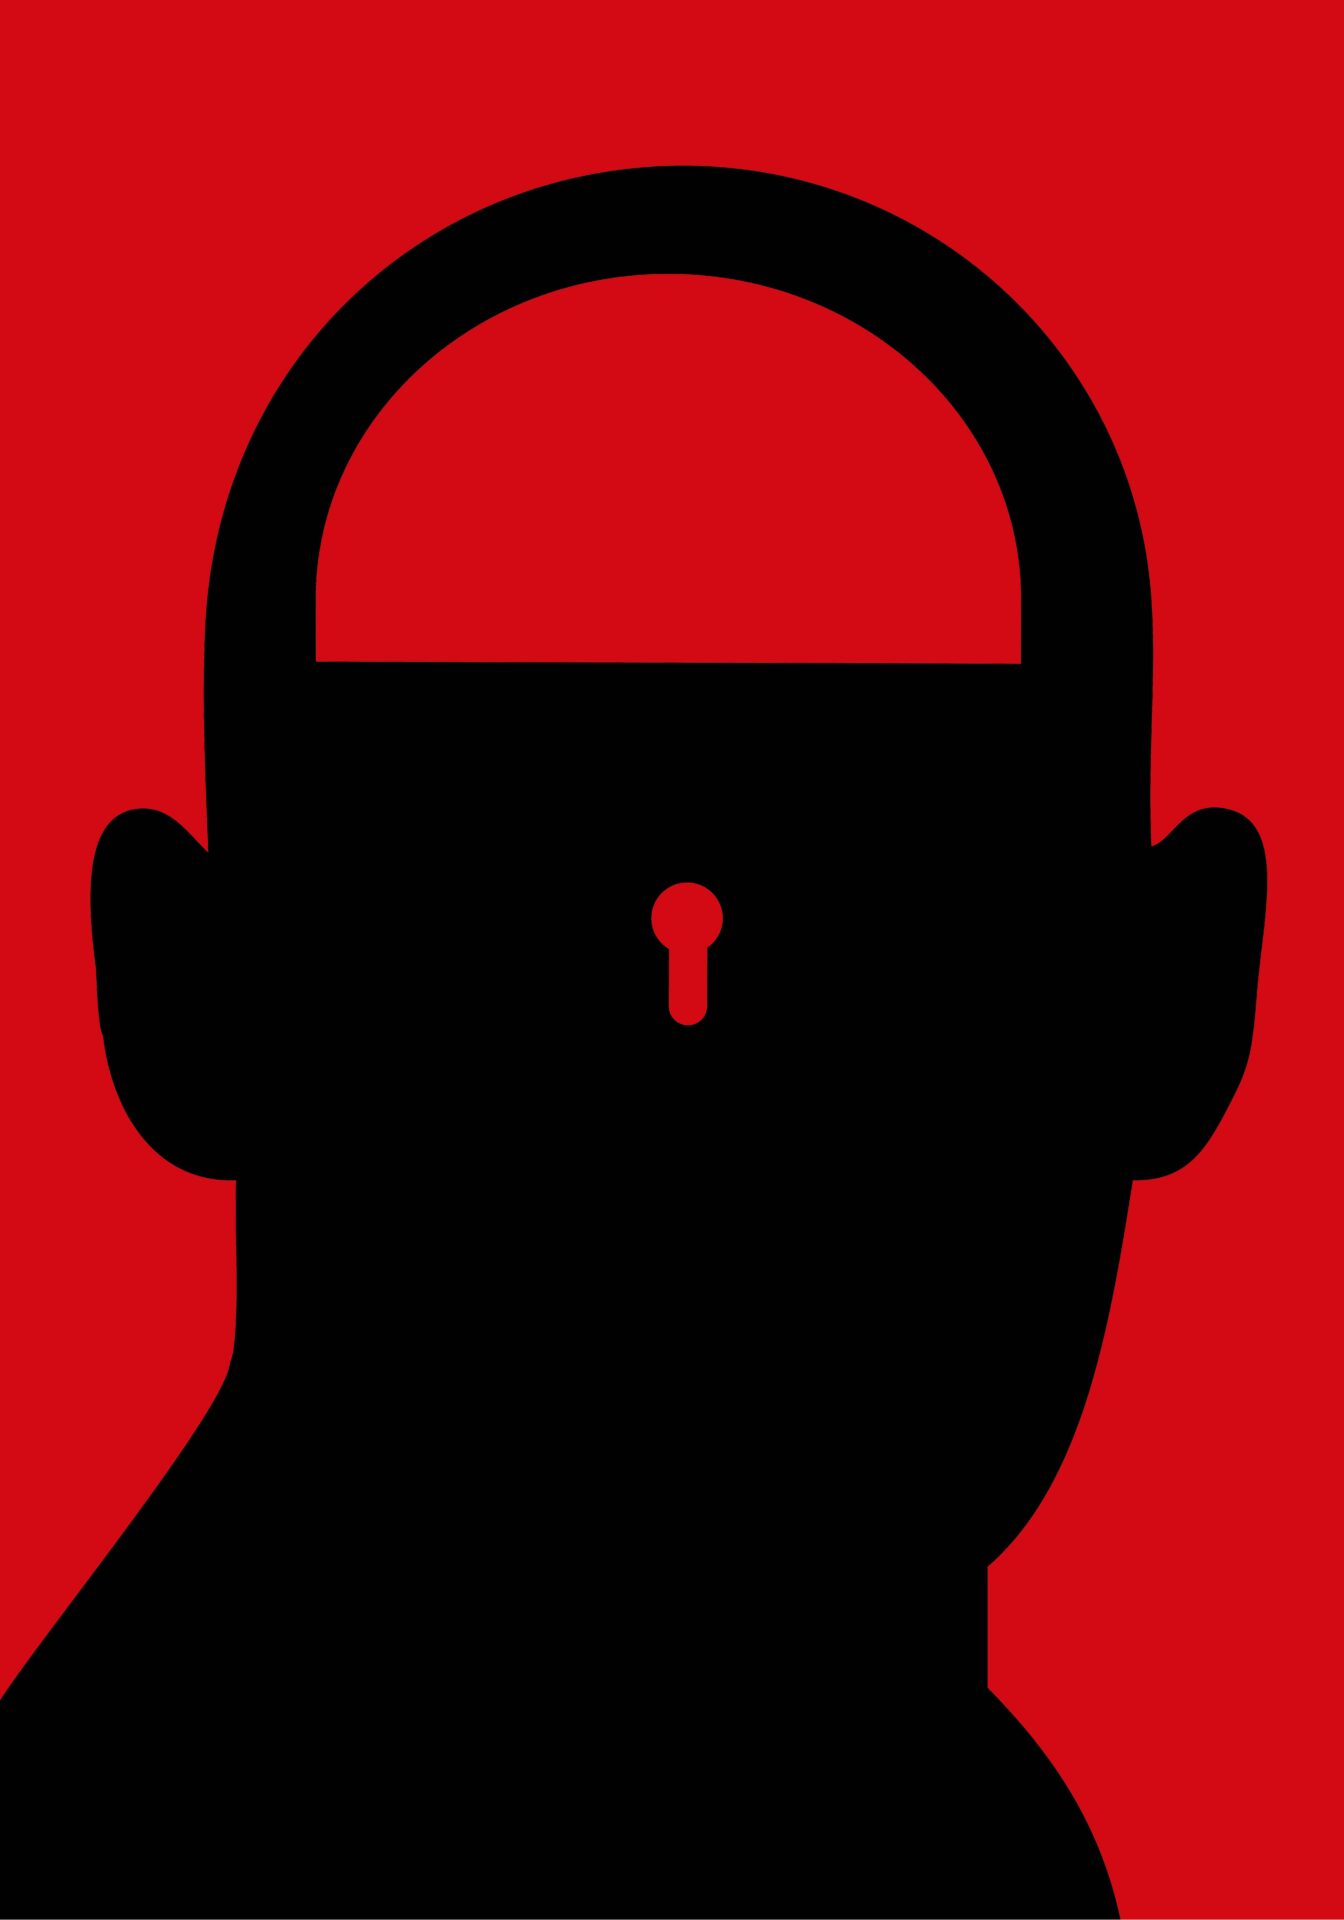 Druk cyfrowy, "Locked", grafika przedstawiająca głowę człowieka z zamknie w środku imitując kłódkę.